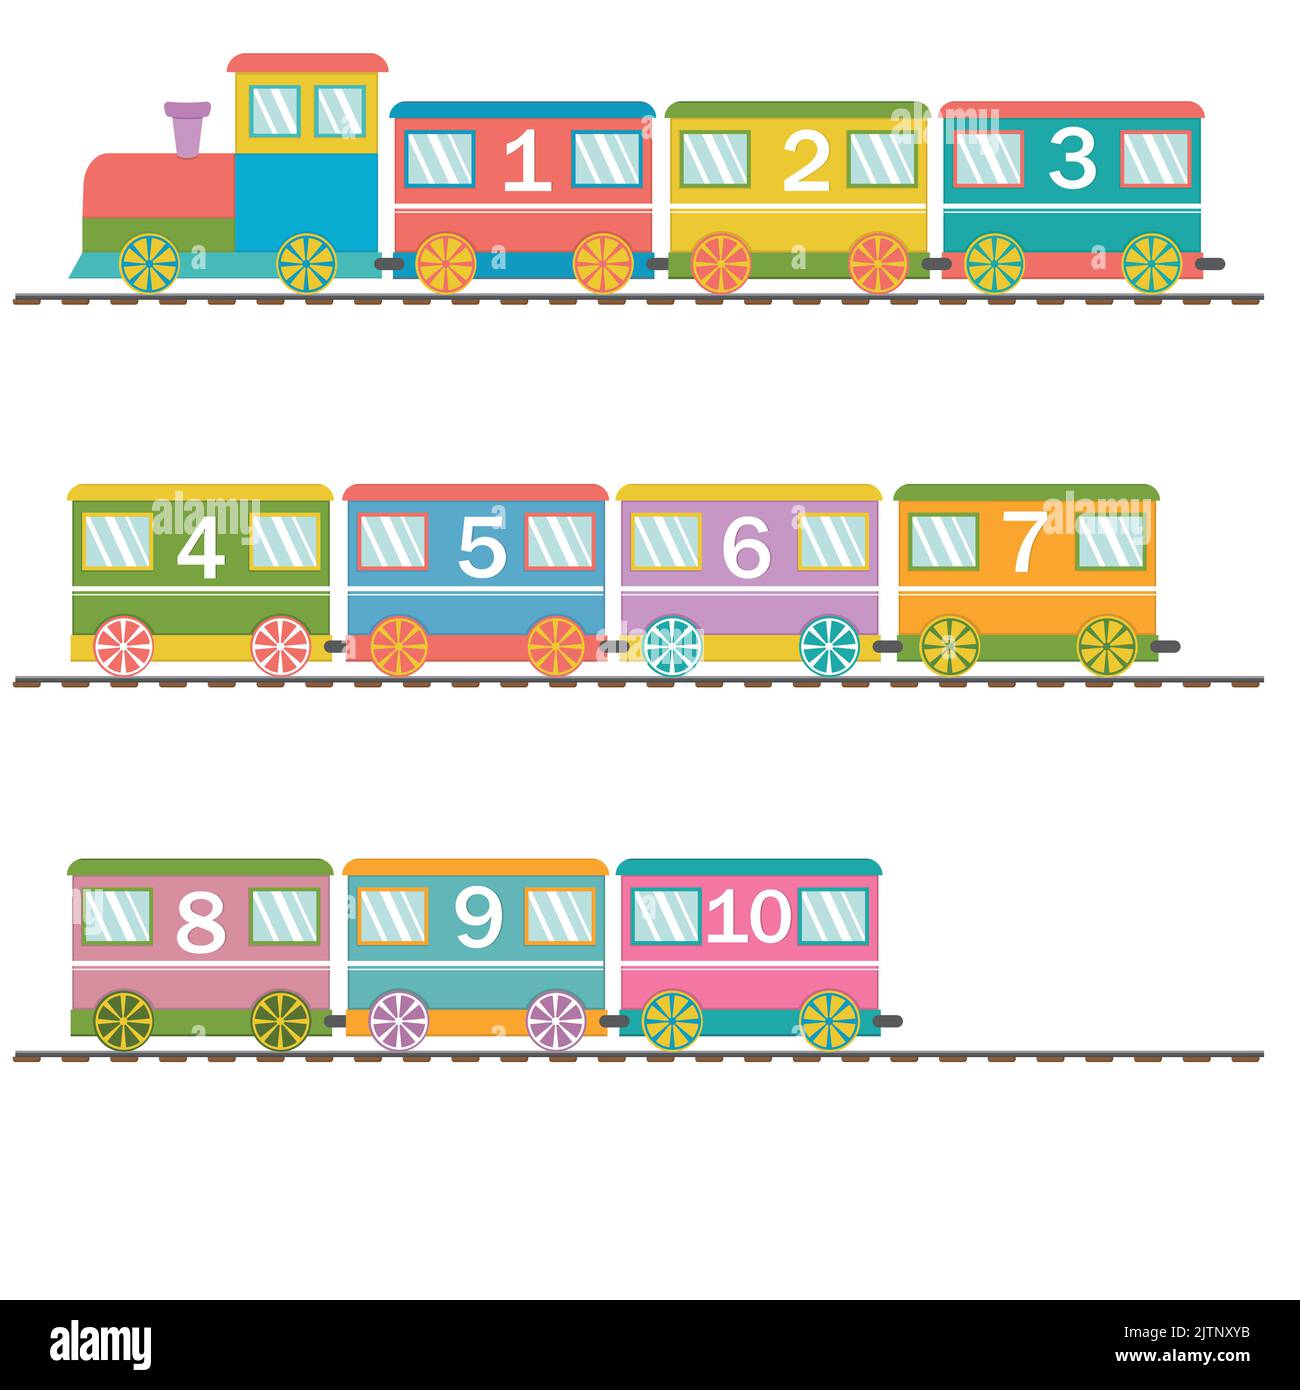 Holzzug mit Wagen und Zahlen, zurück zur Schule, Farbvektordarstellung in flachem Stil. Stock Vektor